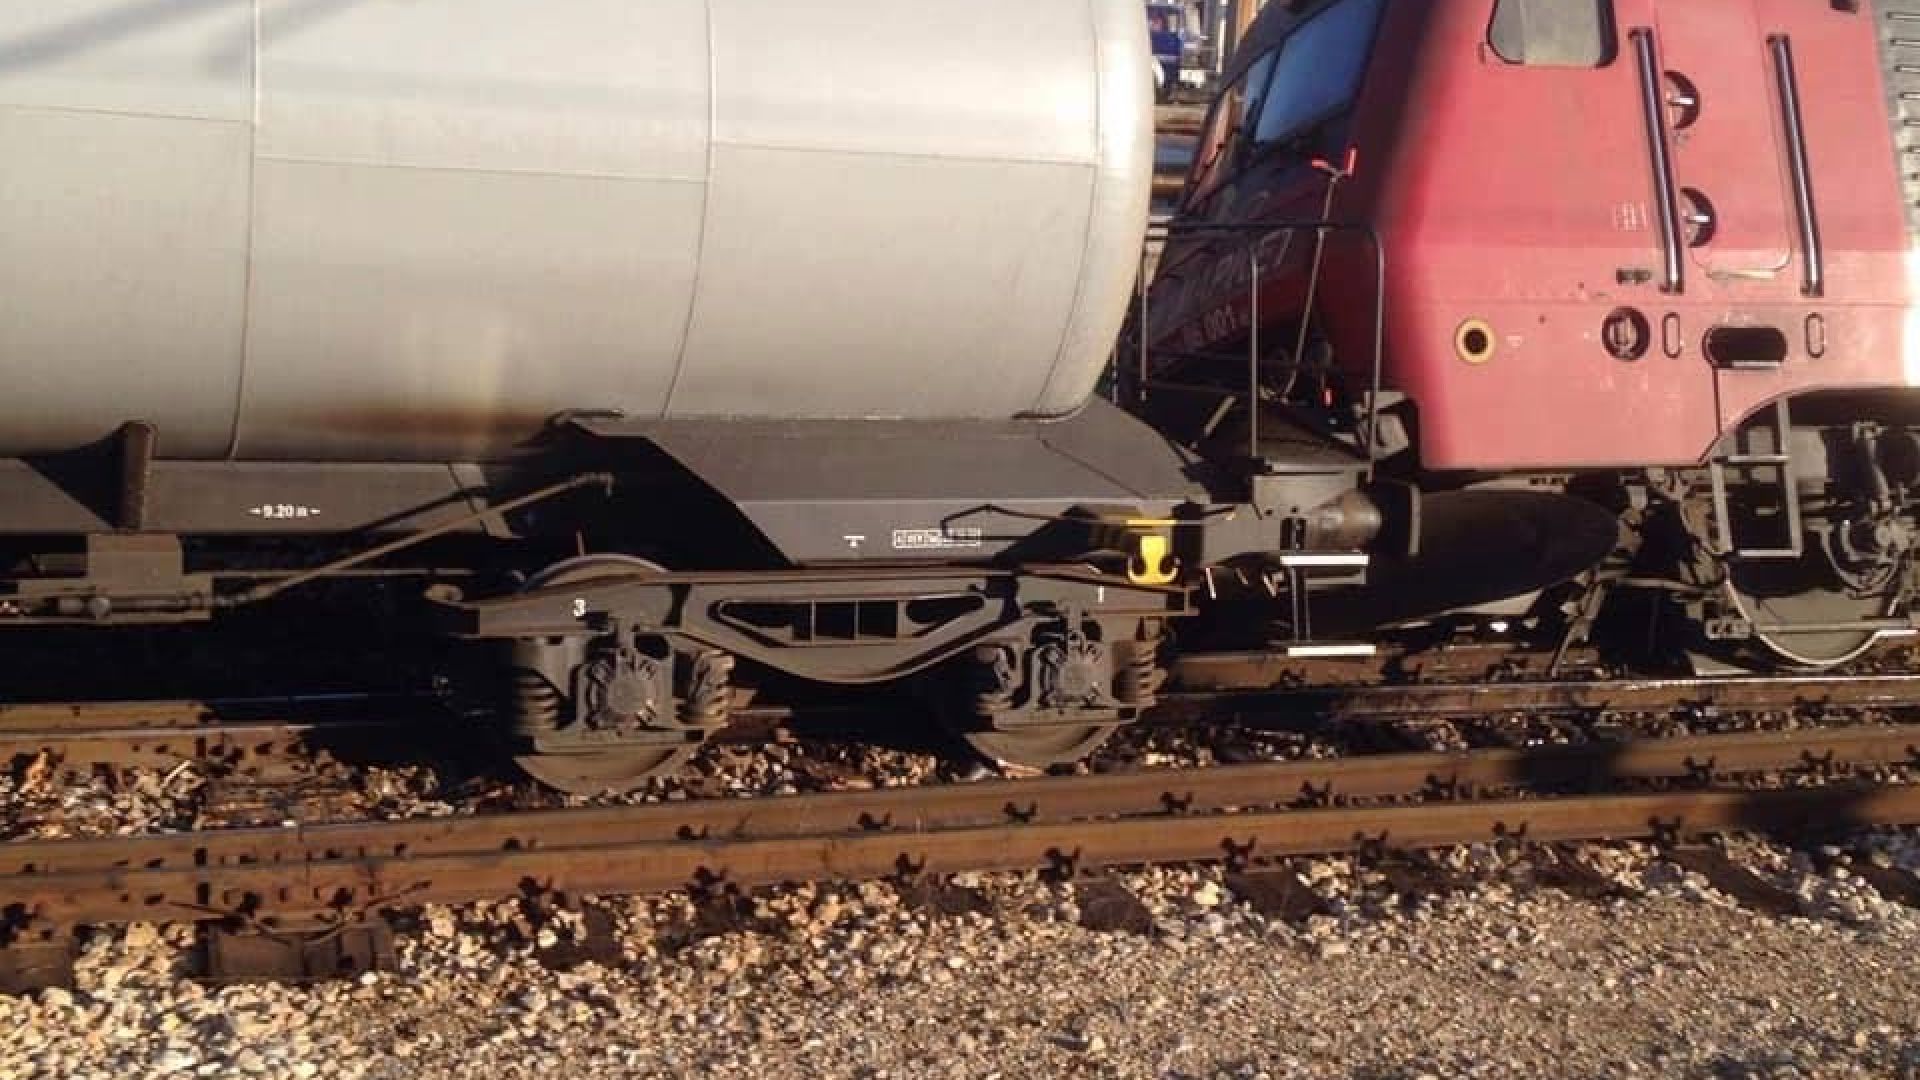 Три вагона от товарен влак превозващ пропан бутан са дерайлирали на